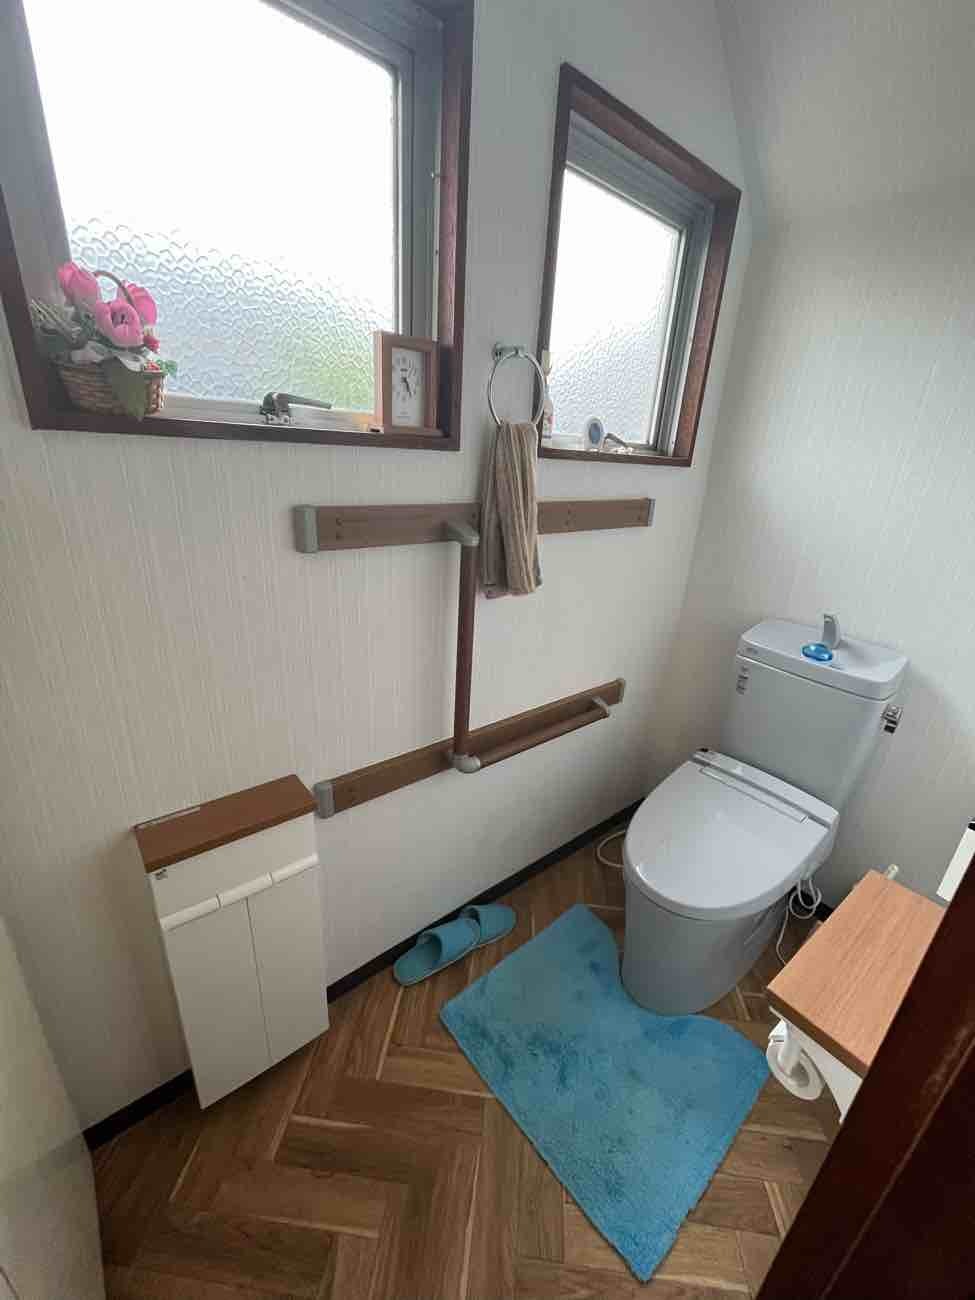 【東京都足立区】Y様トイレ交換内装工事が完了しました。リクシル アメージュZ 画像